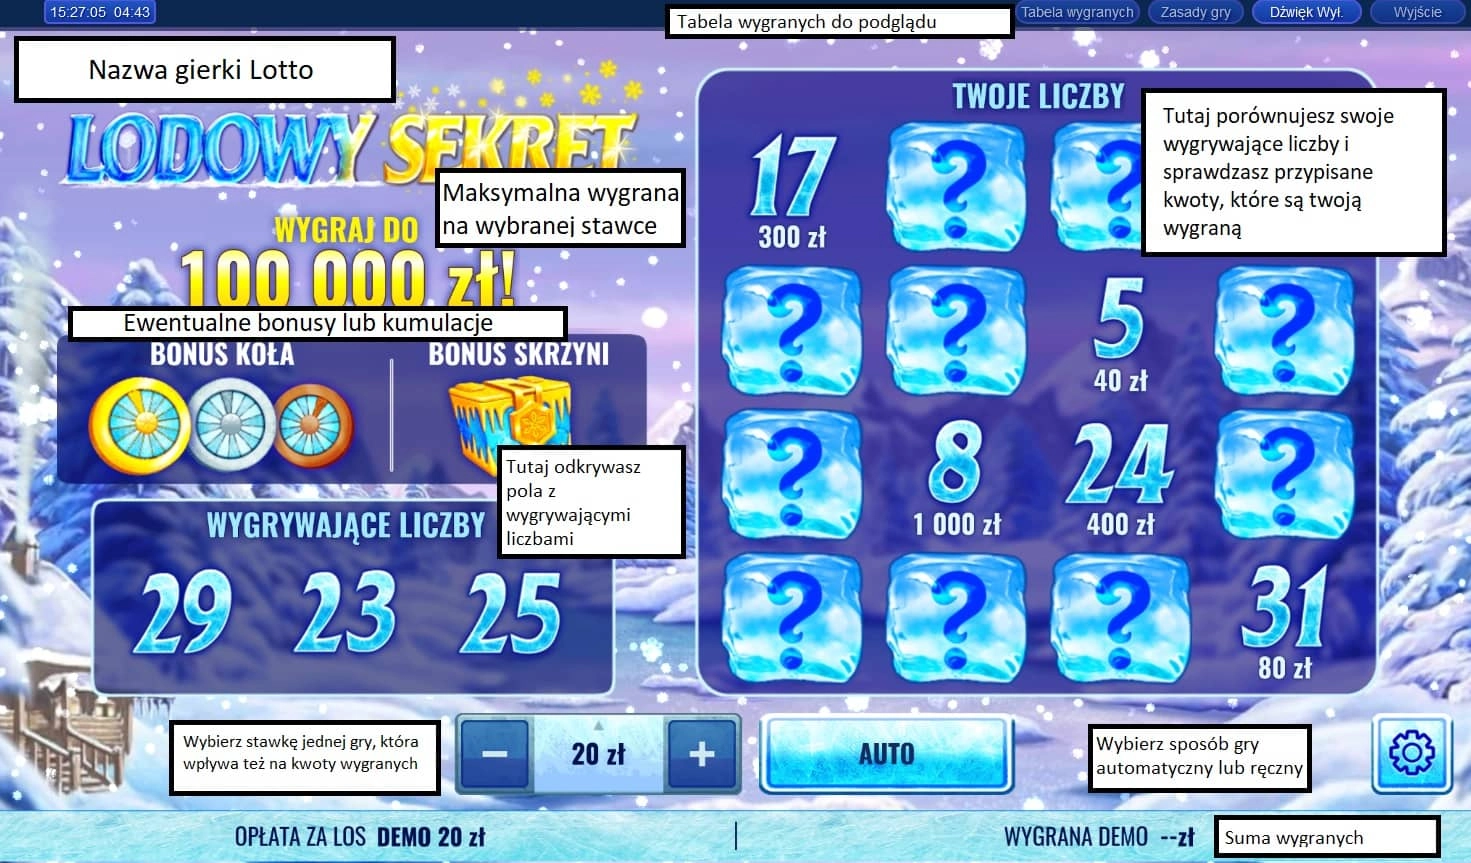 instrukcja obsługi przykładowego ekranu gierki Lotto